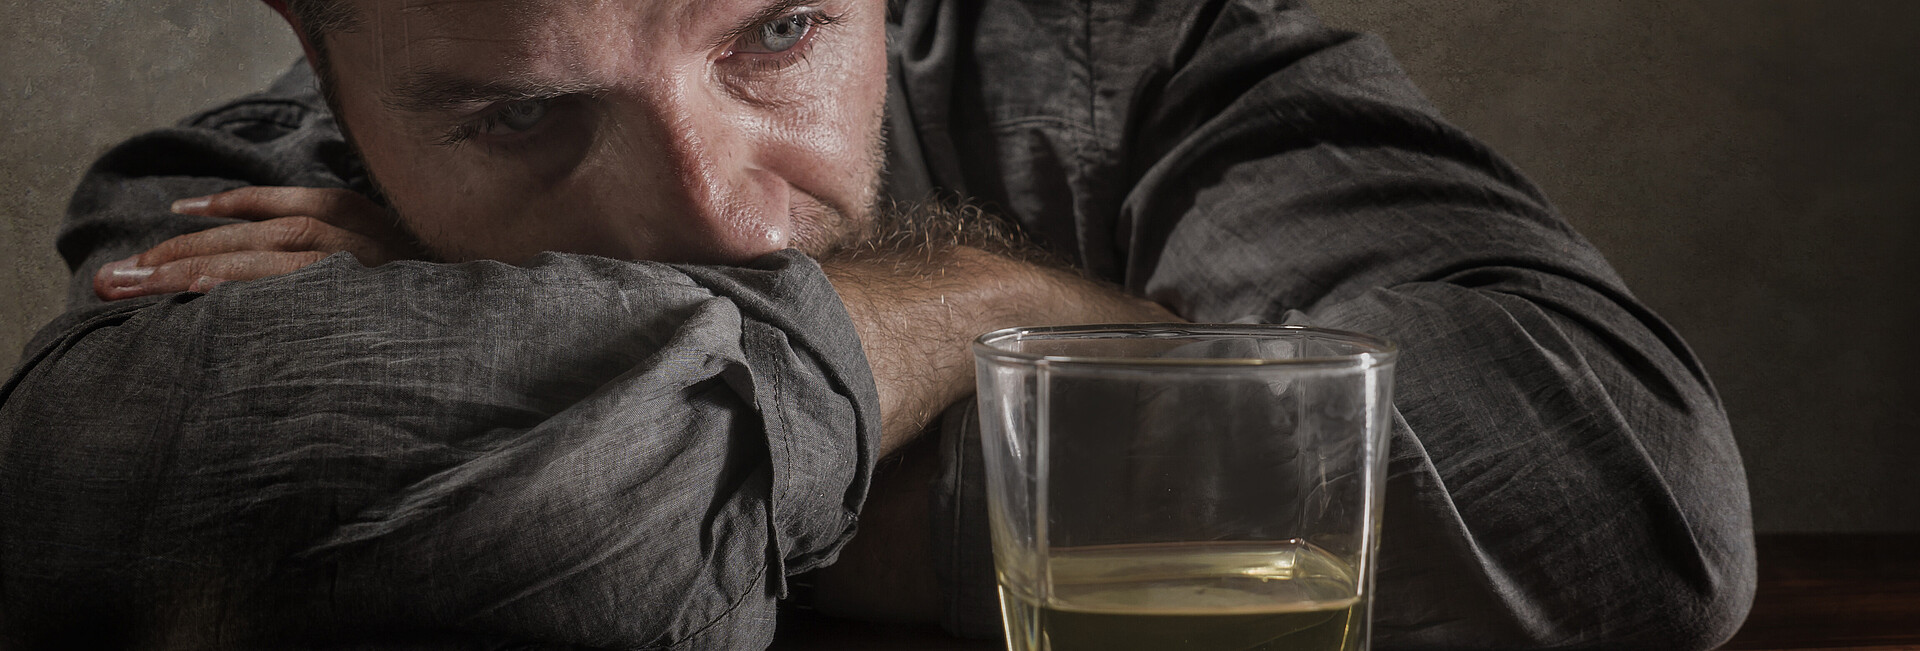 Mann sitzt traurig vor einem Glas mit Alkohl